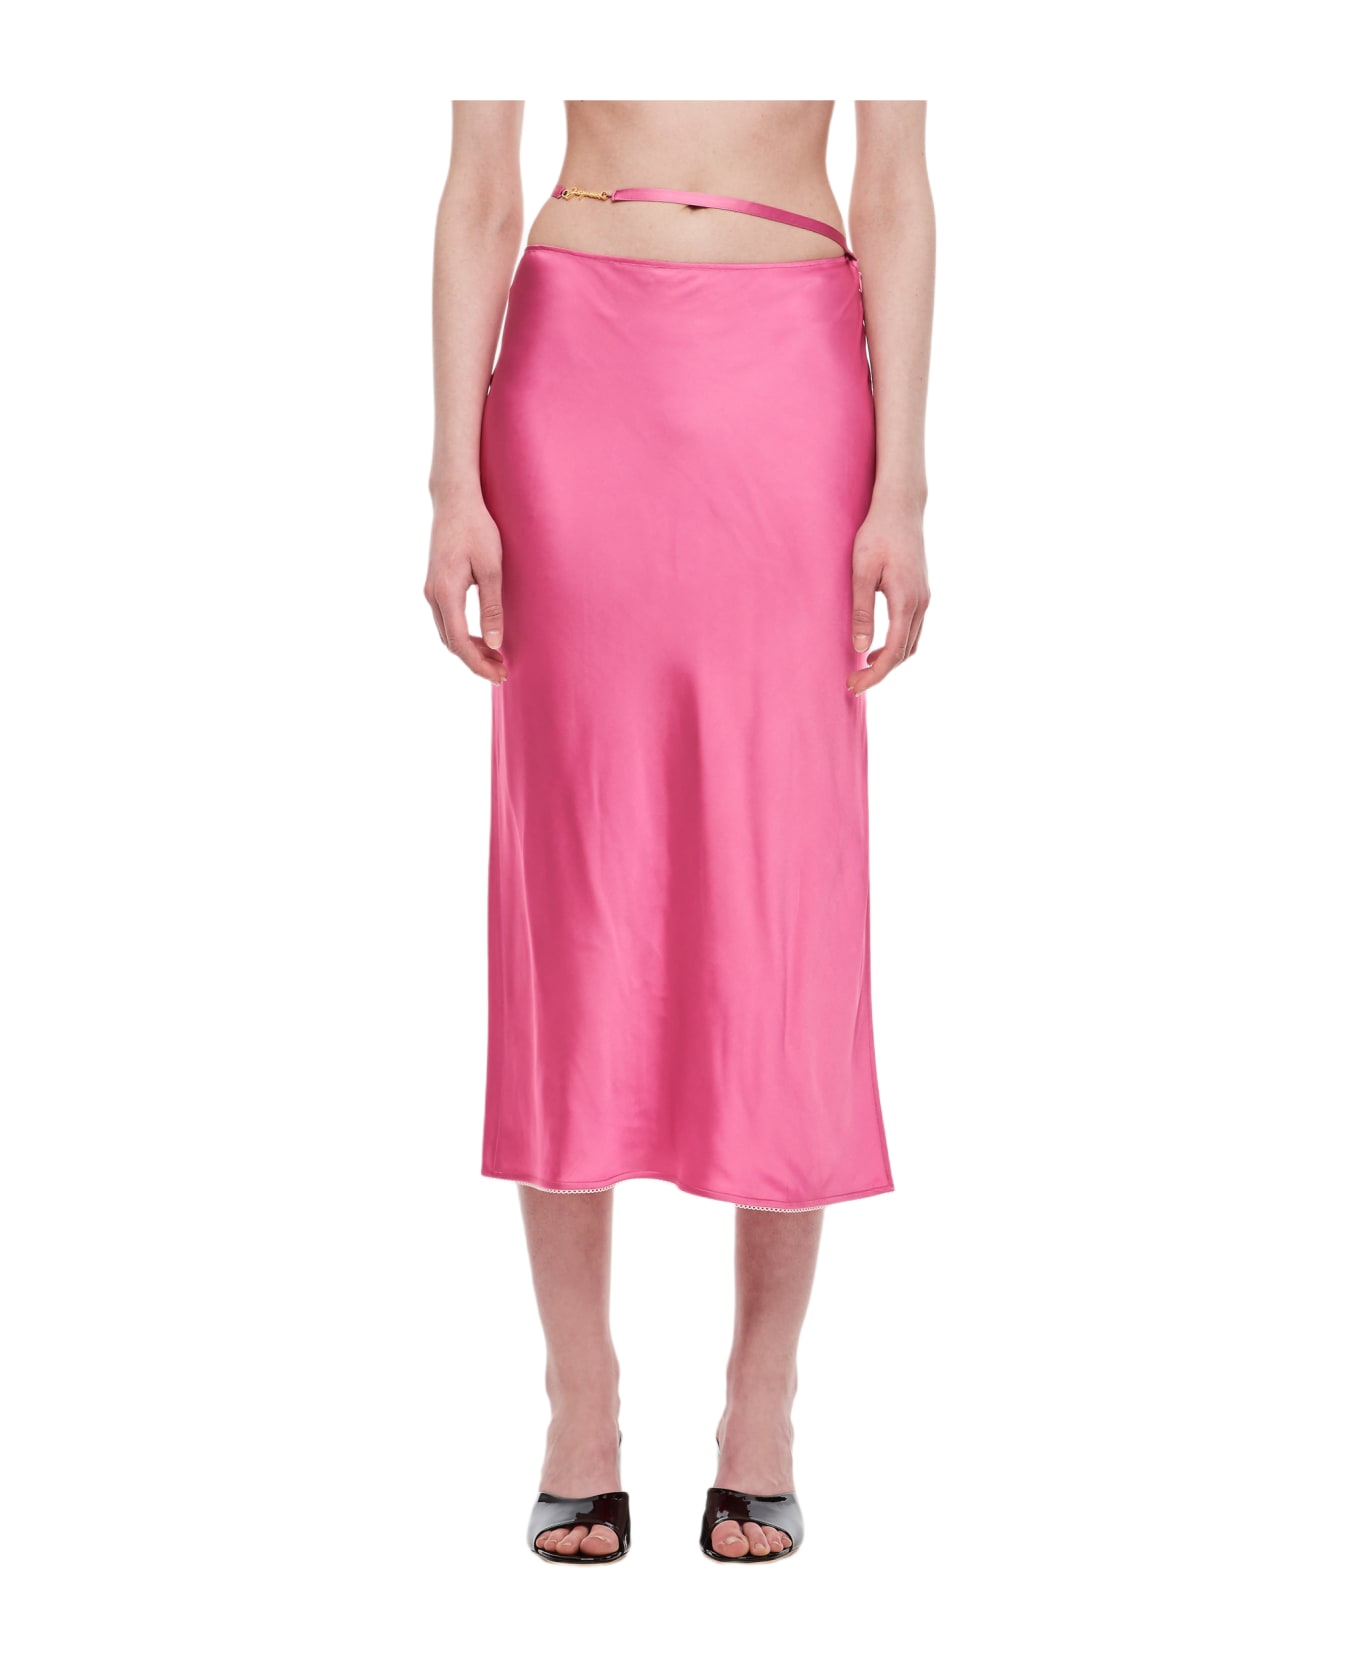 Jacquemus La Jupe Notte - Pink スカート